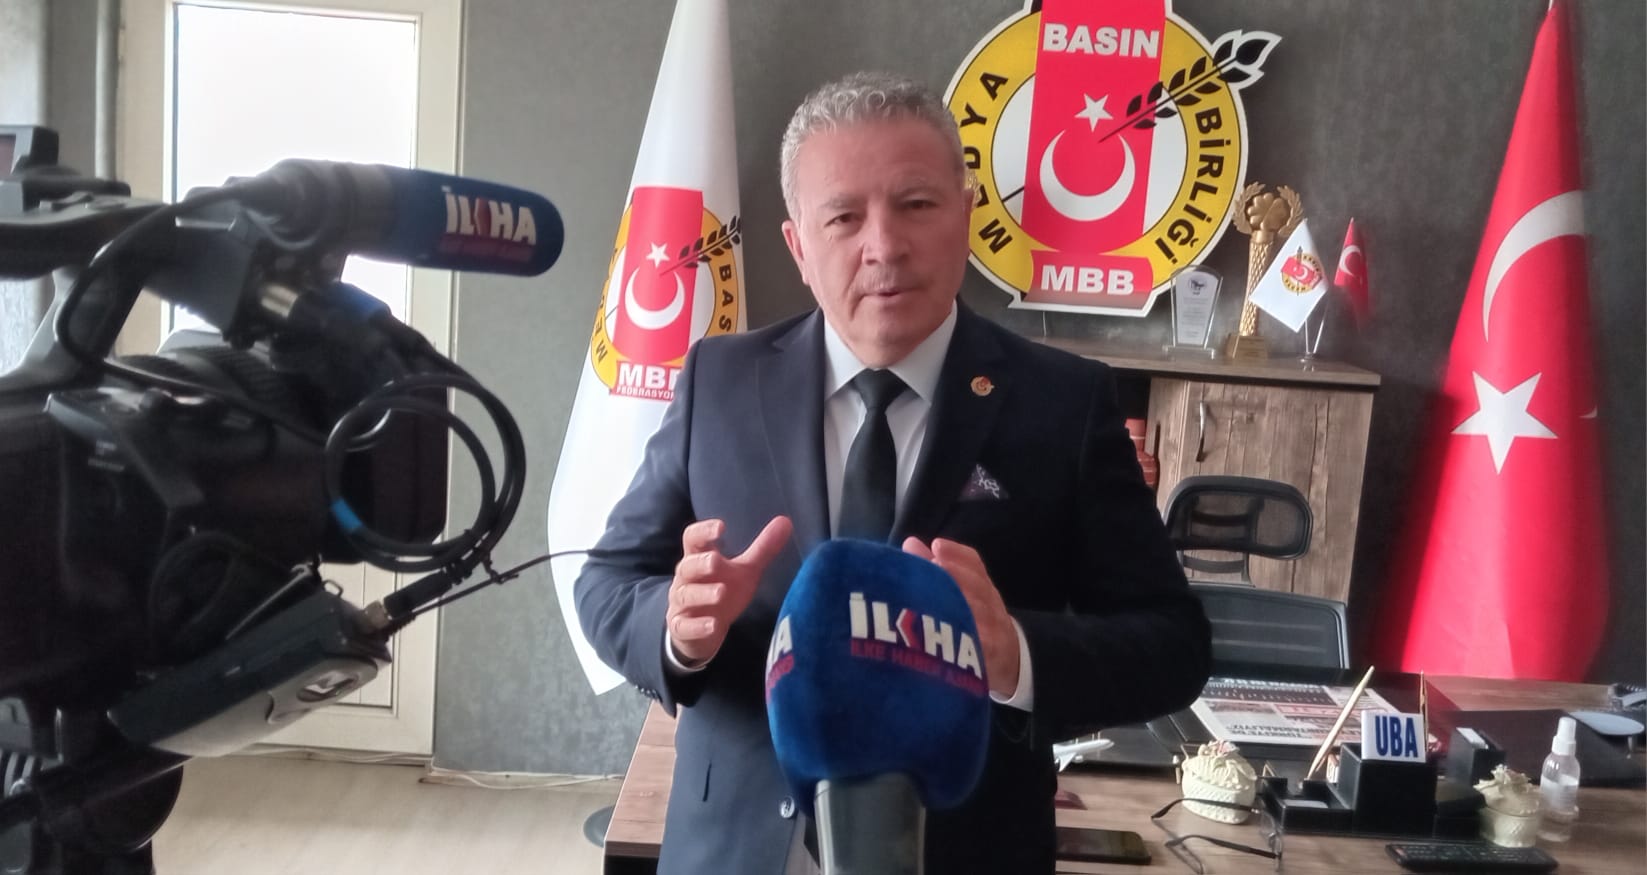 MBF Genel Başkanı İbrahim Yaman İlkha ‘ya Konuştu